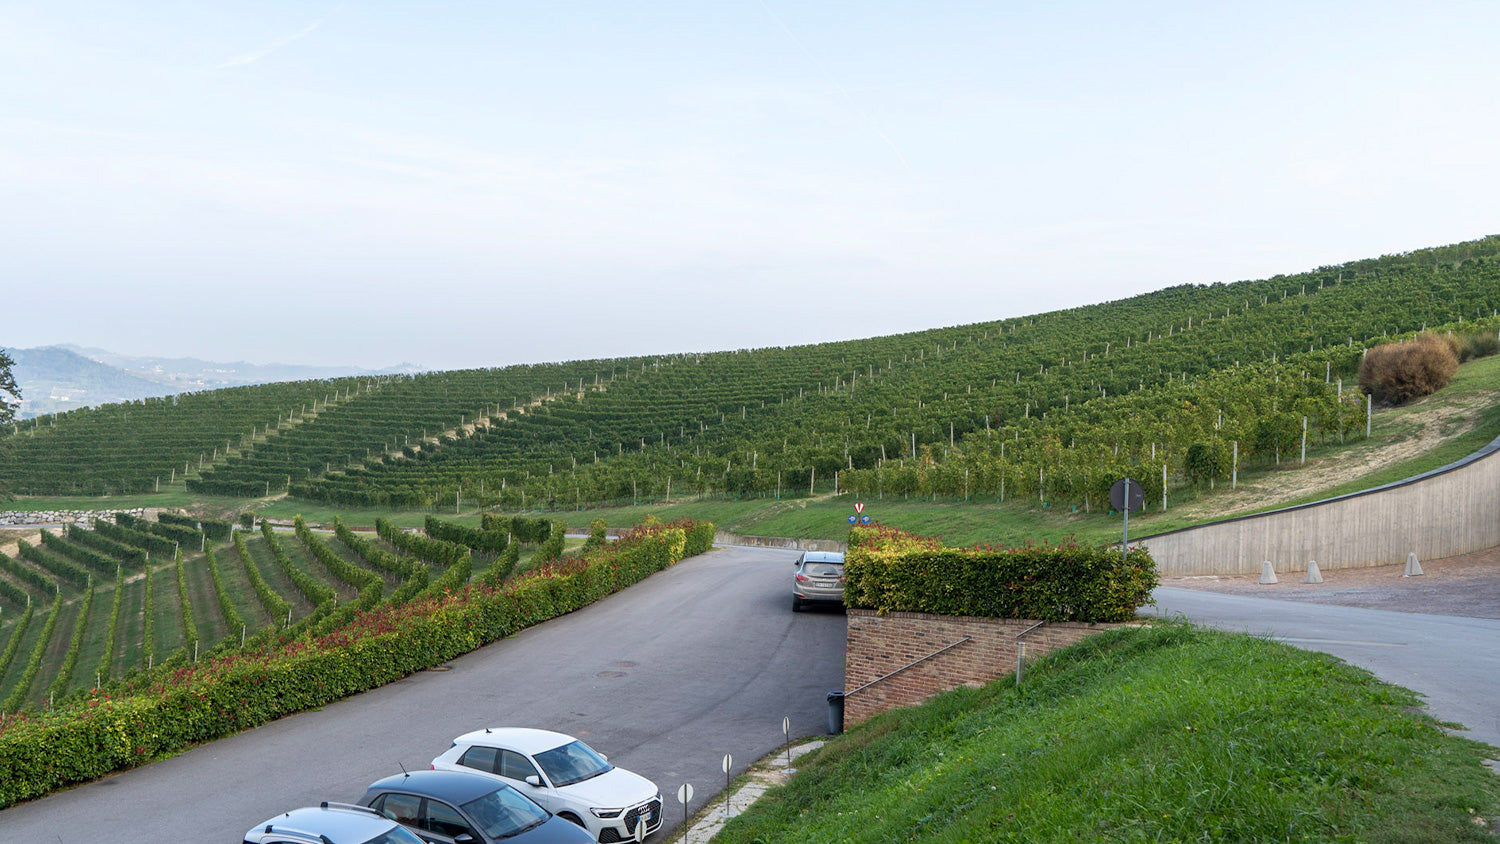  モンソルド・ベルナルディーナ醸造所に隣接するブドウ畑の様子。